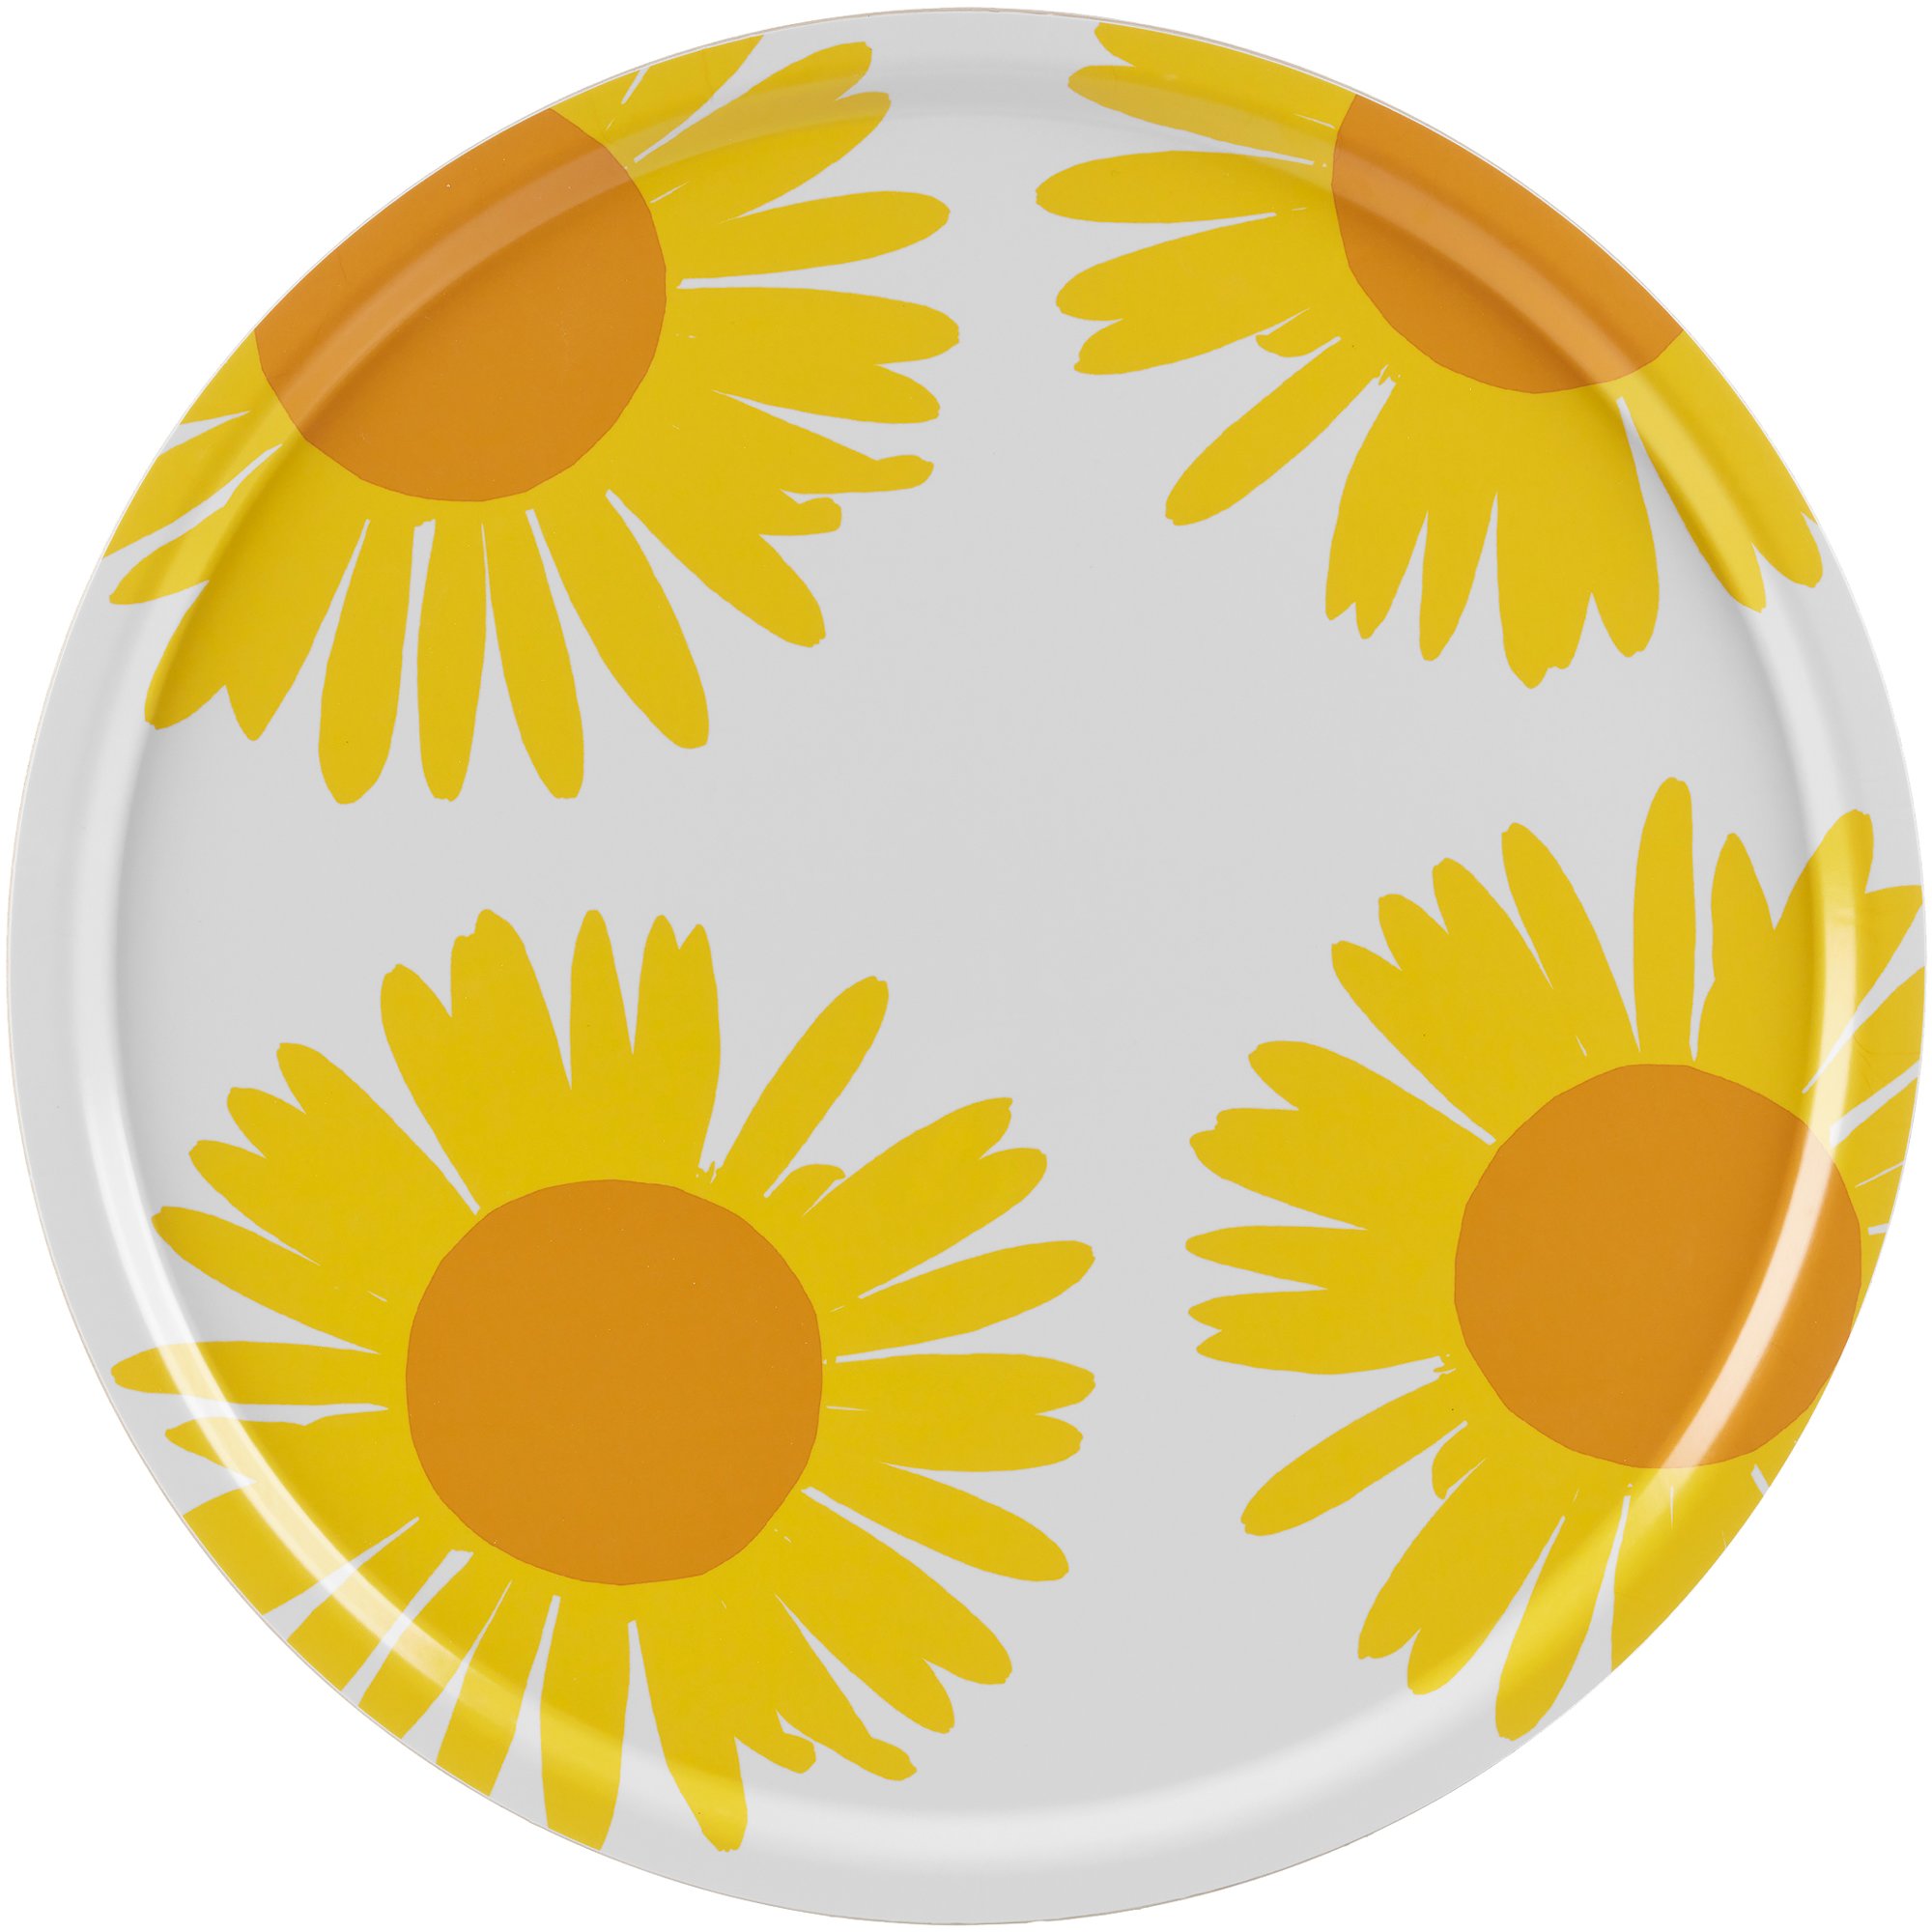 Marimekko Auringonkukka bricka 65 cm vit/gul